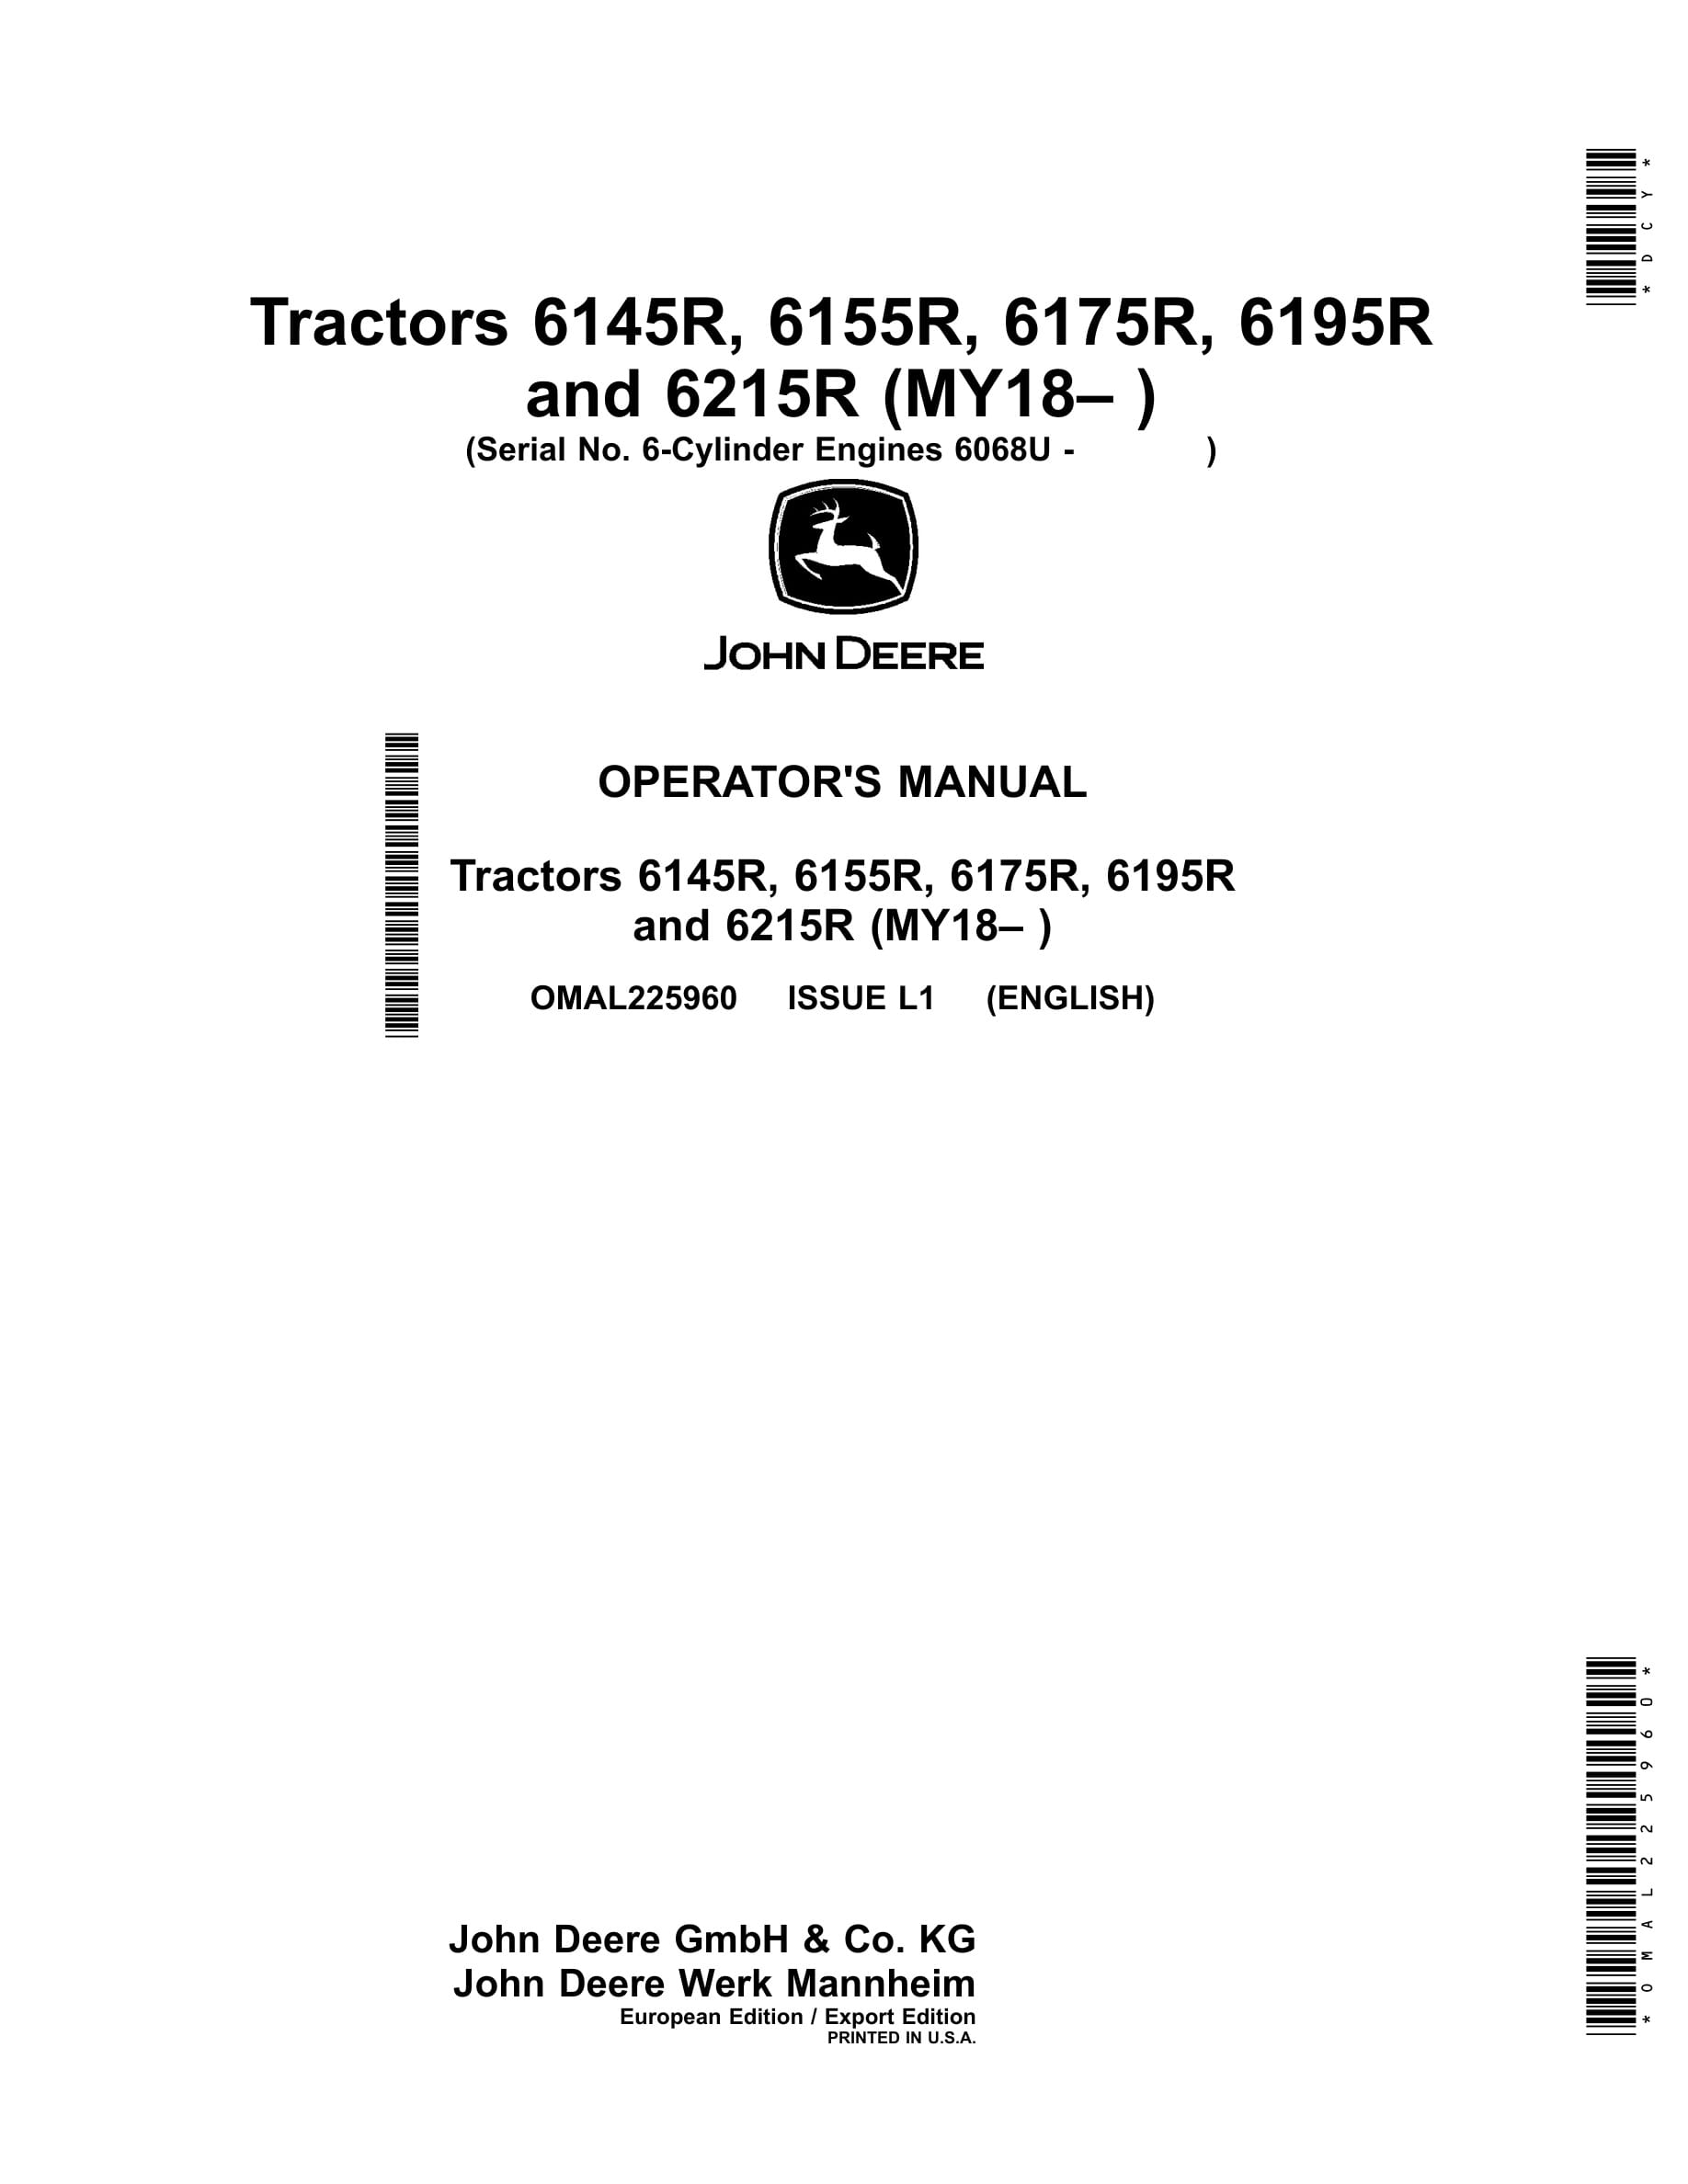 John Deere 6145r, 6155r, 6175r, 6195r 62150r Tractors Operator Manuals OMAL225960-1